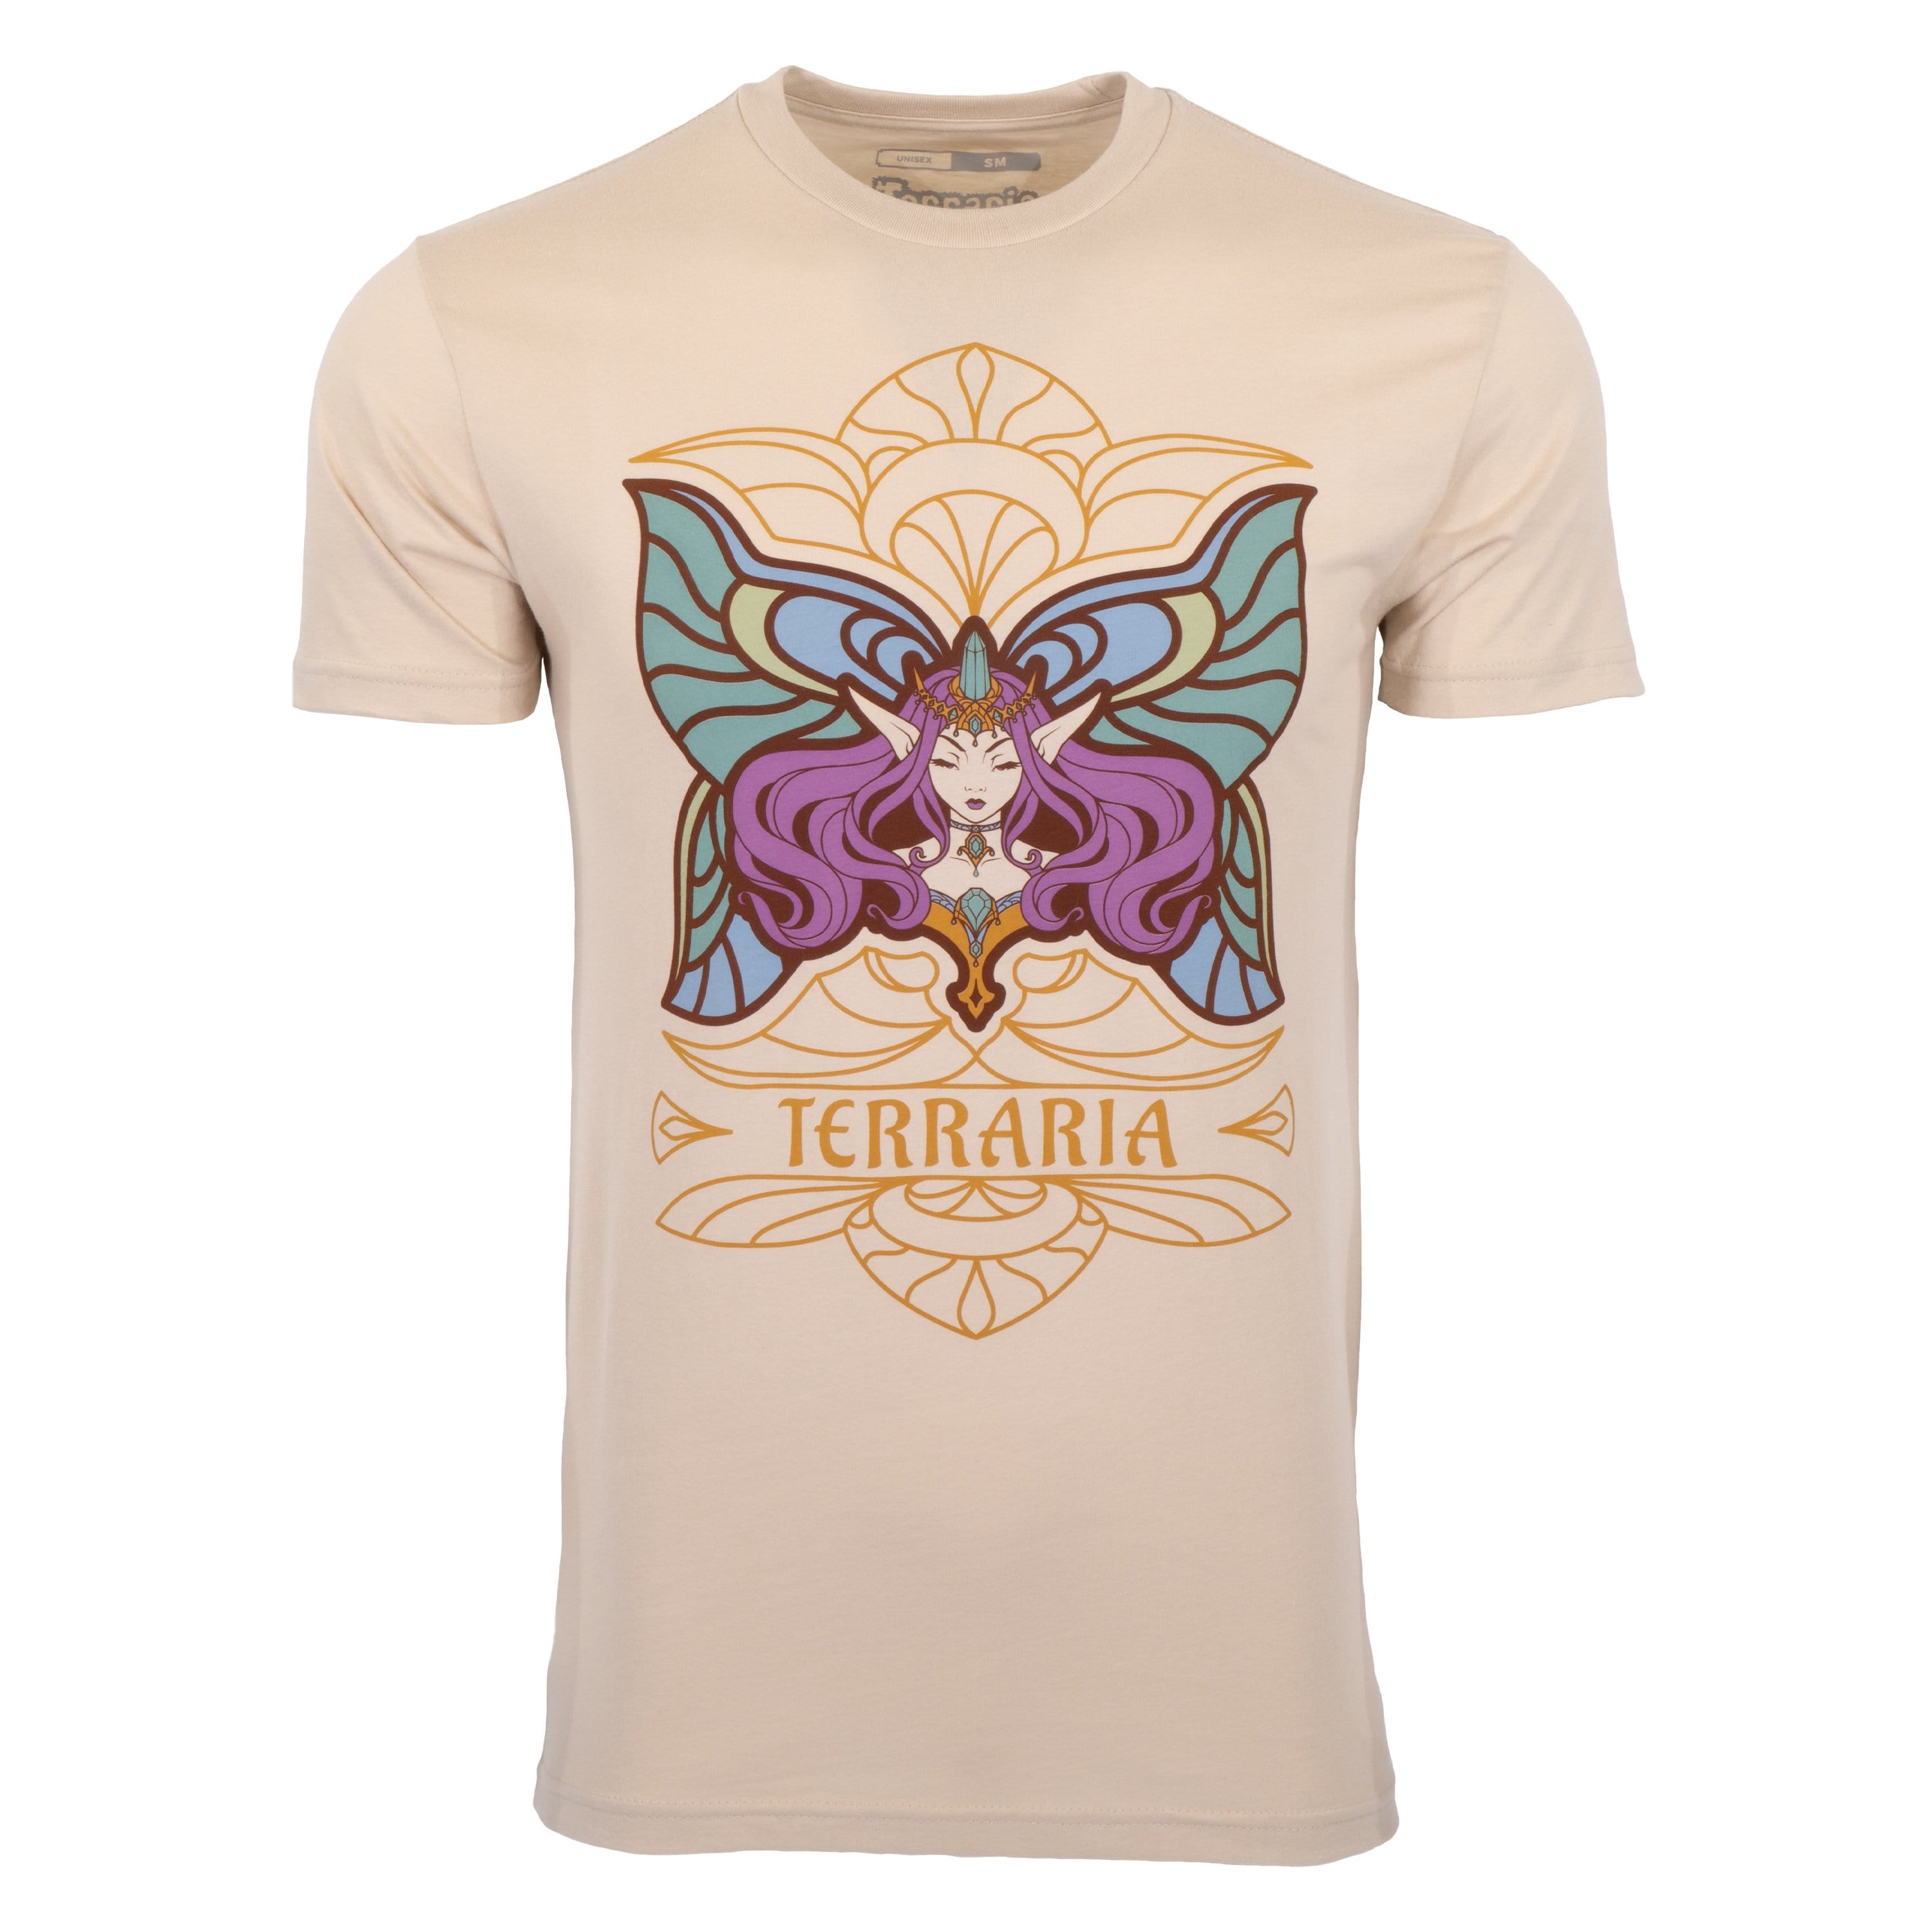 Terraria - Empress of Light 100% Cotton T-shirt